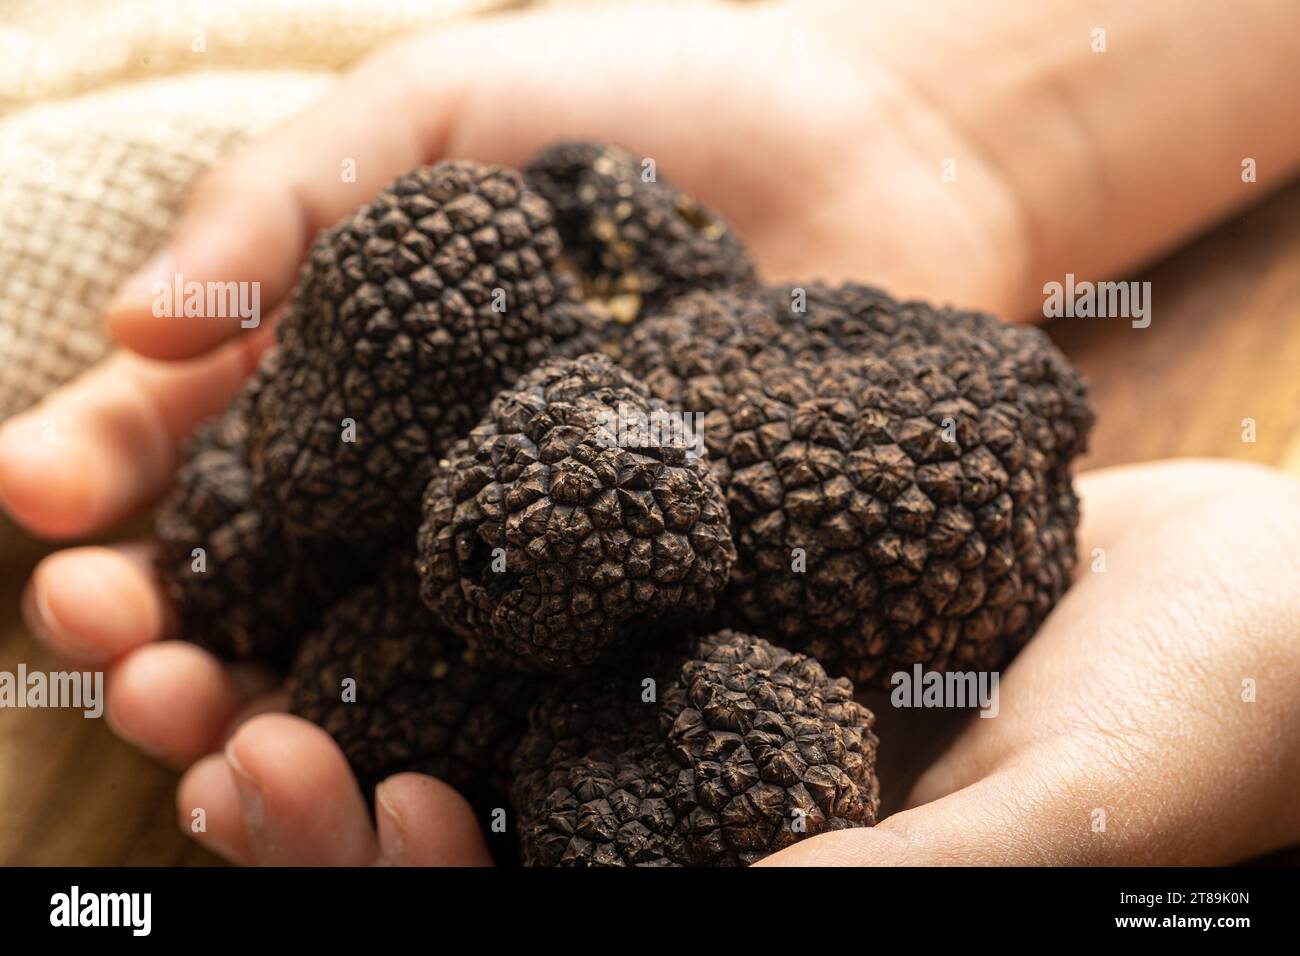 Élégance culinaire : mains saisissant des truffes noires fraîches dans une Symphonie de délice Banque D'Images